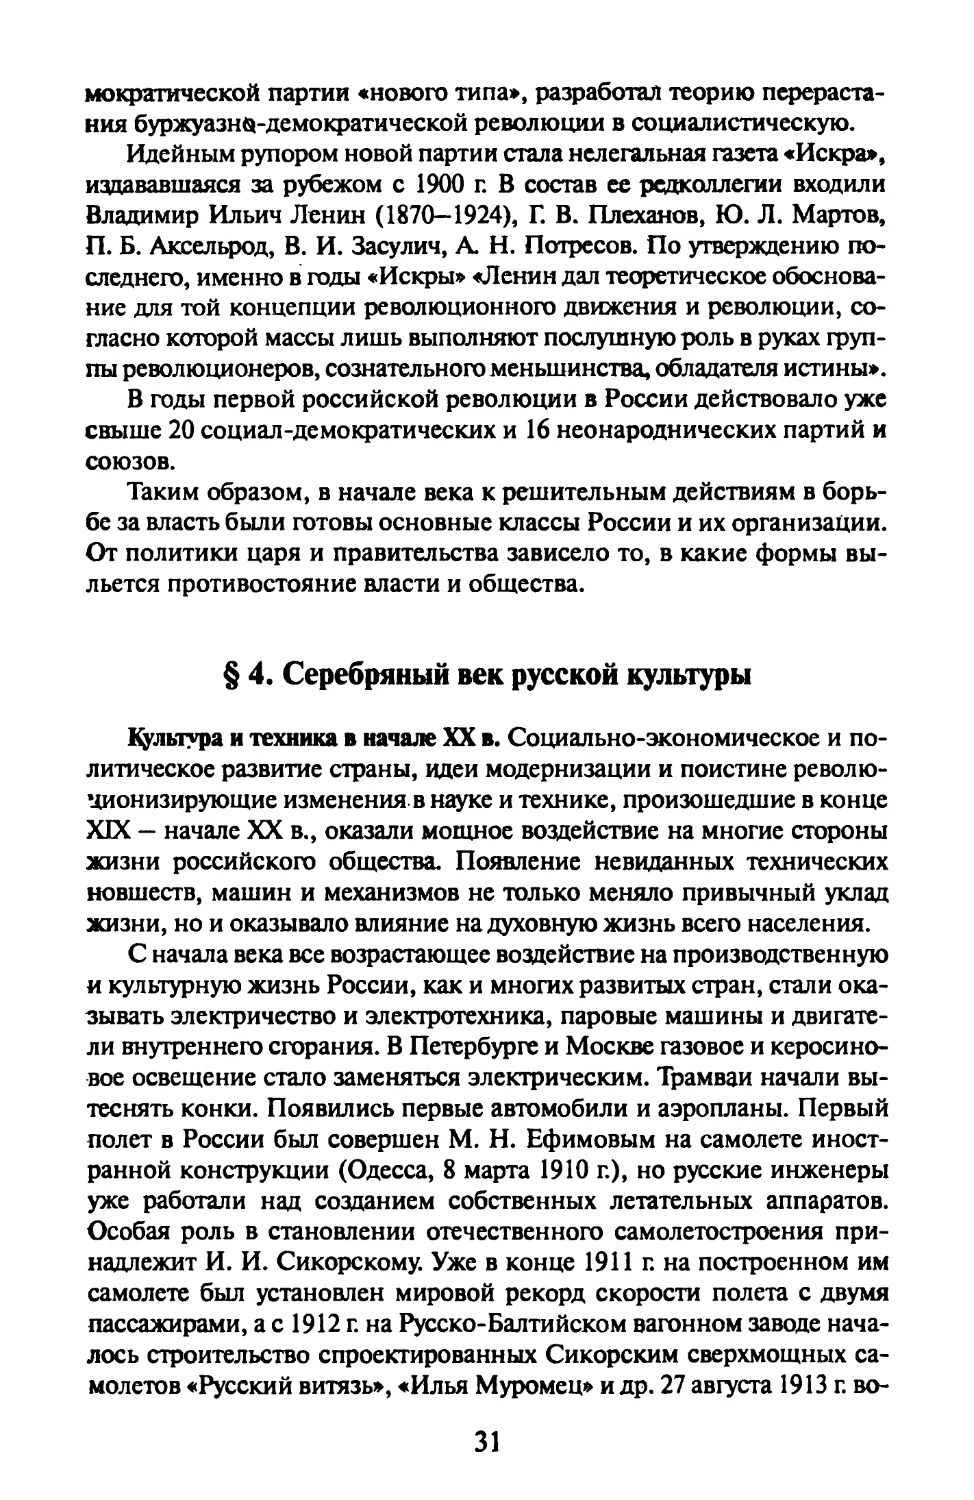 § 4. «Серебряный век» русской культуры